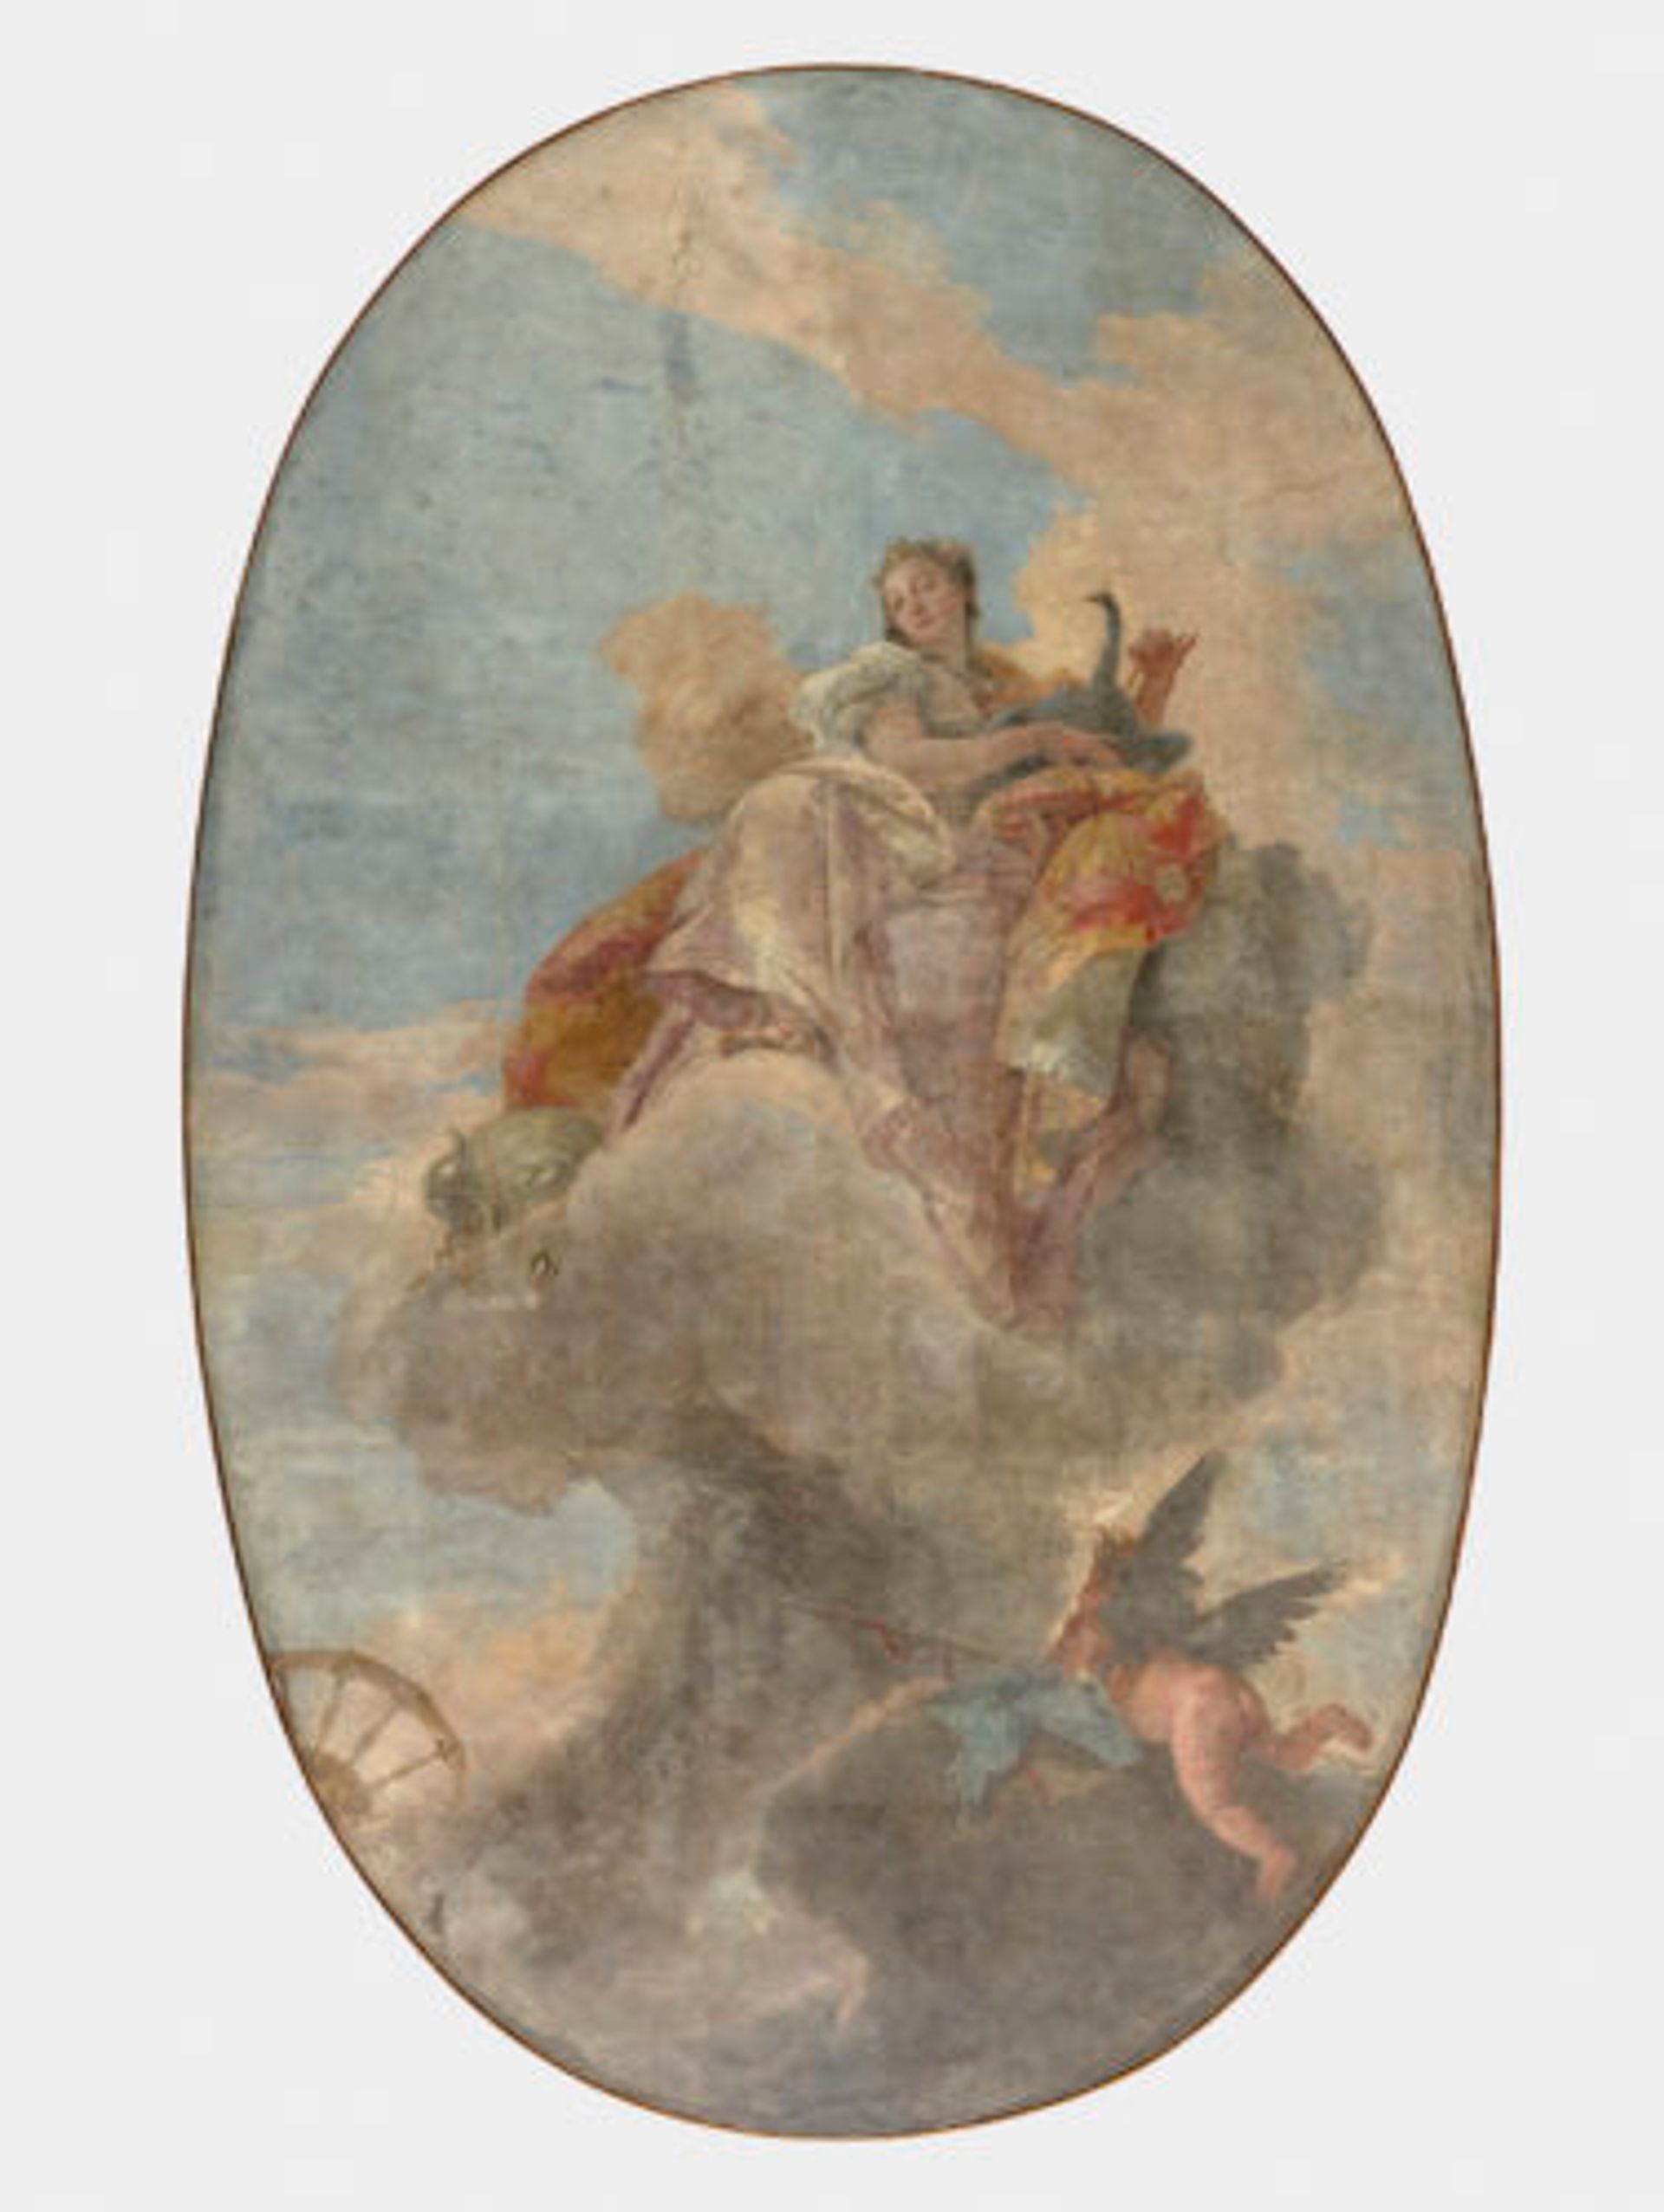 Giambattista Tiepolo, Junon au milieu des nuées, vers 1735, fresque transposée sur toile et montée sur bois, 350 x 210 cm, Paris, Musée du Louvre. Photo : Hervé Lewandowski D.R.